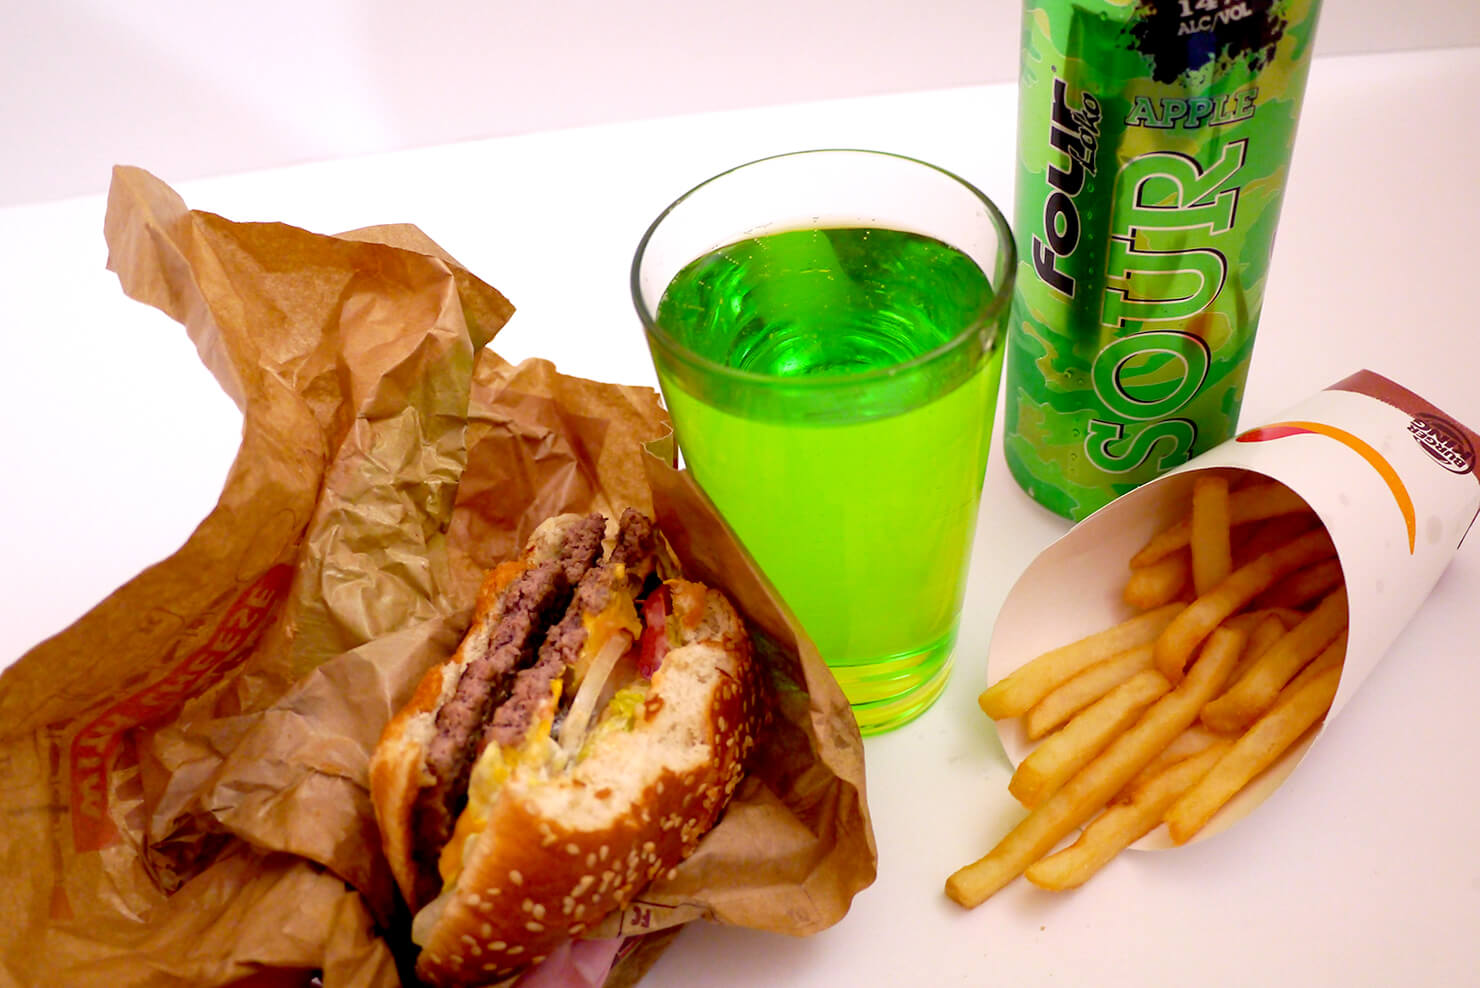 アメリカ版ストロングゼロ「Four Loko」フォーロコと、ハンバーガー、フライドポテトを飲み食いしている様子